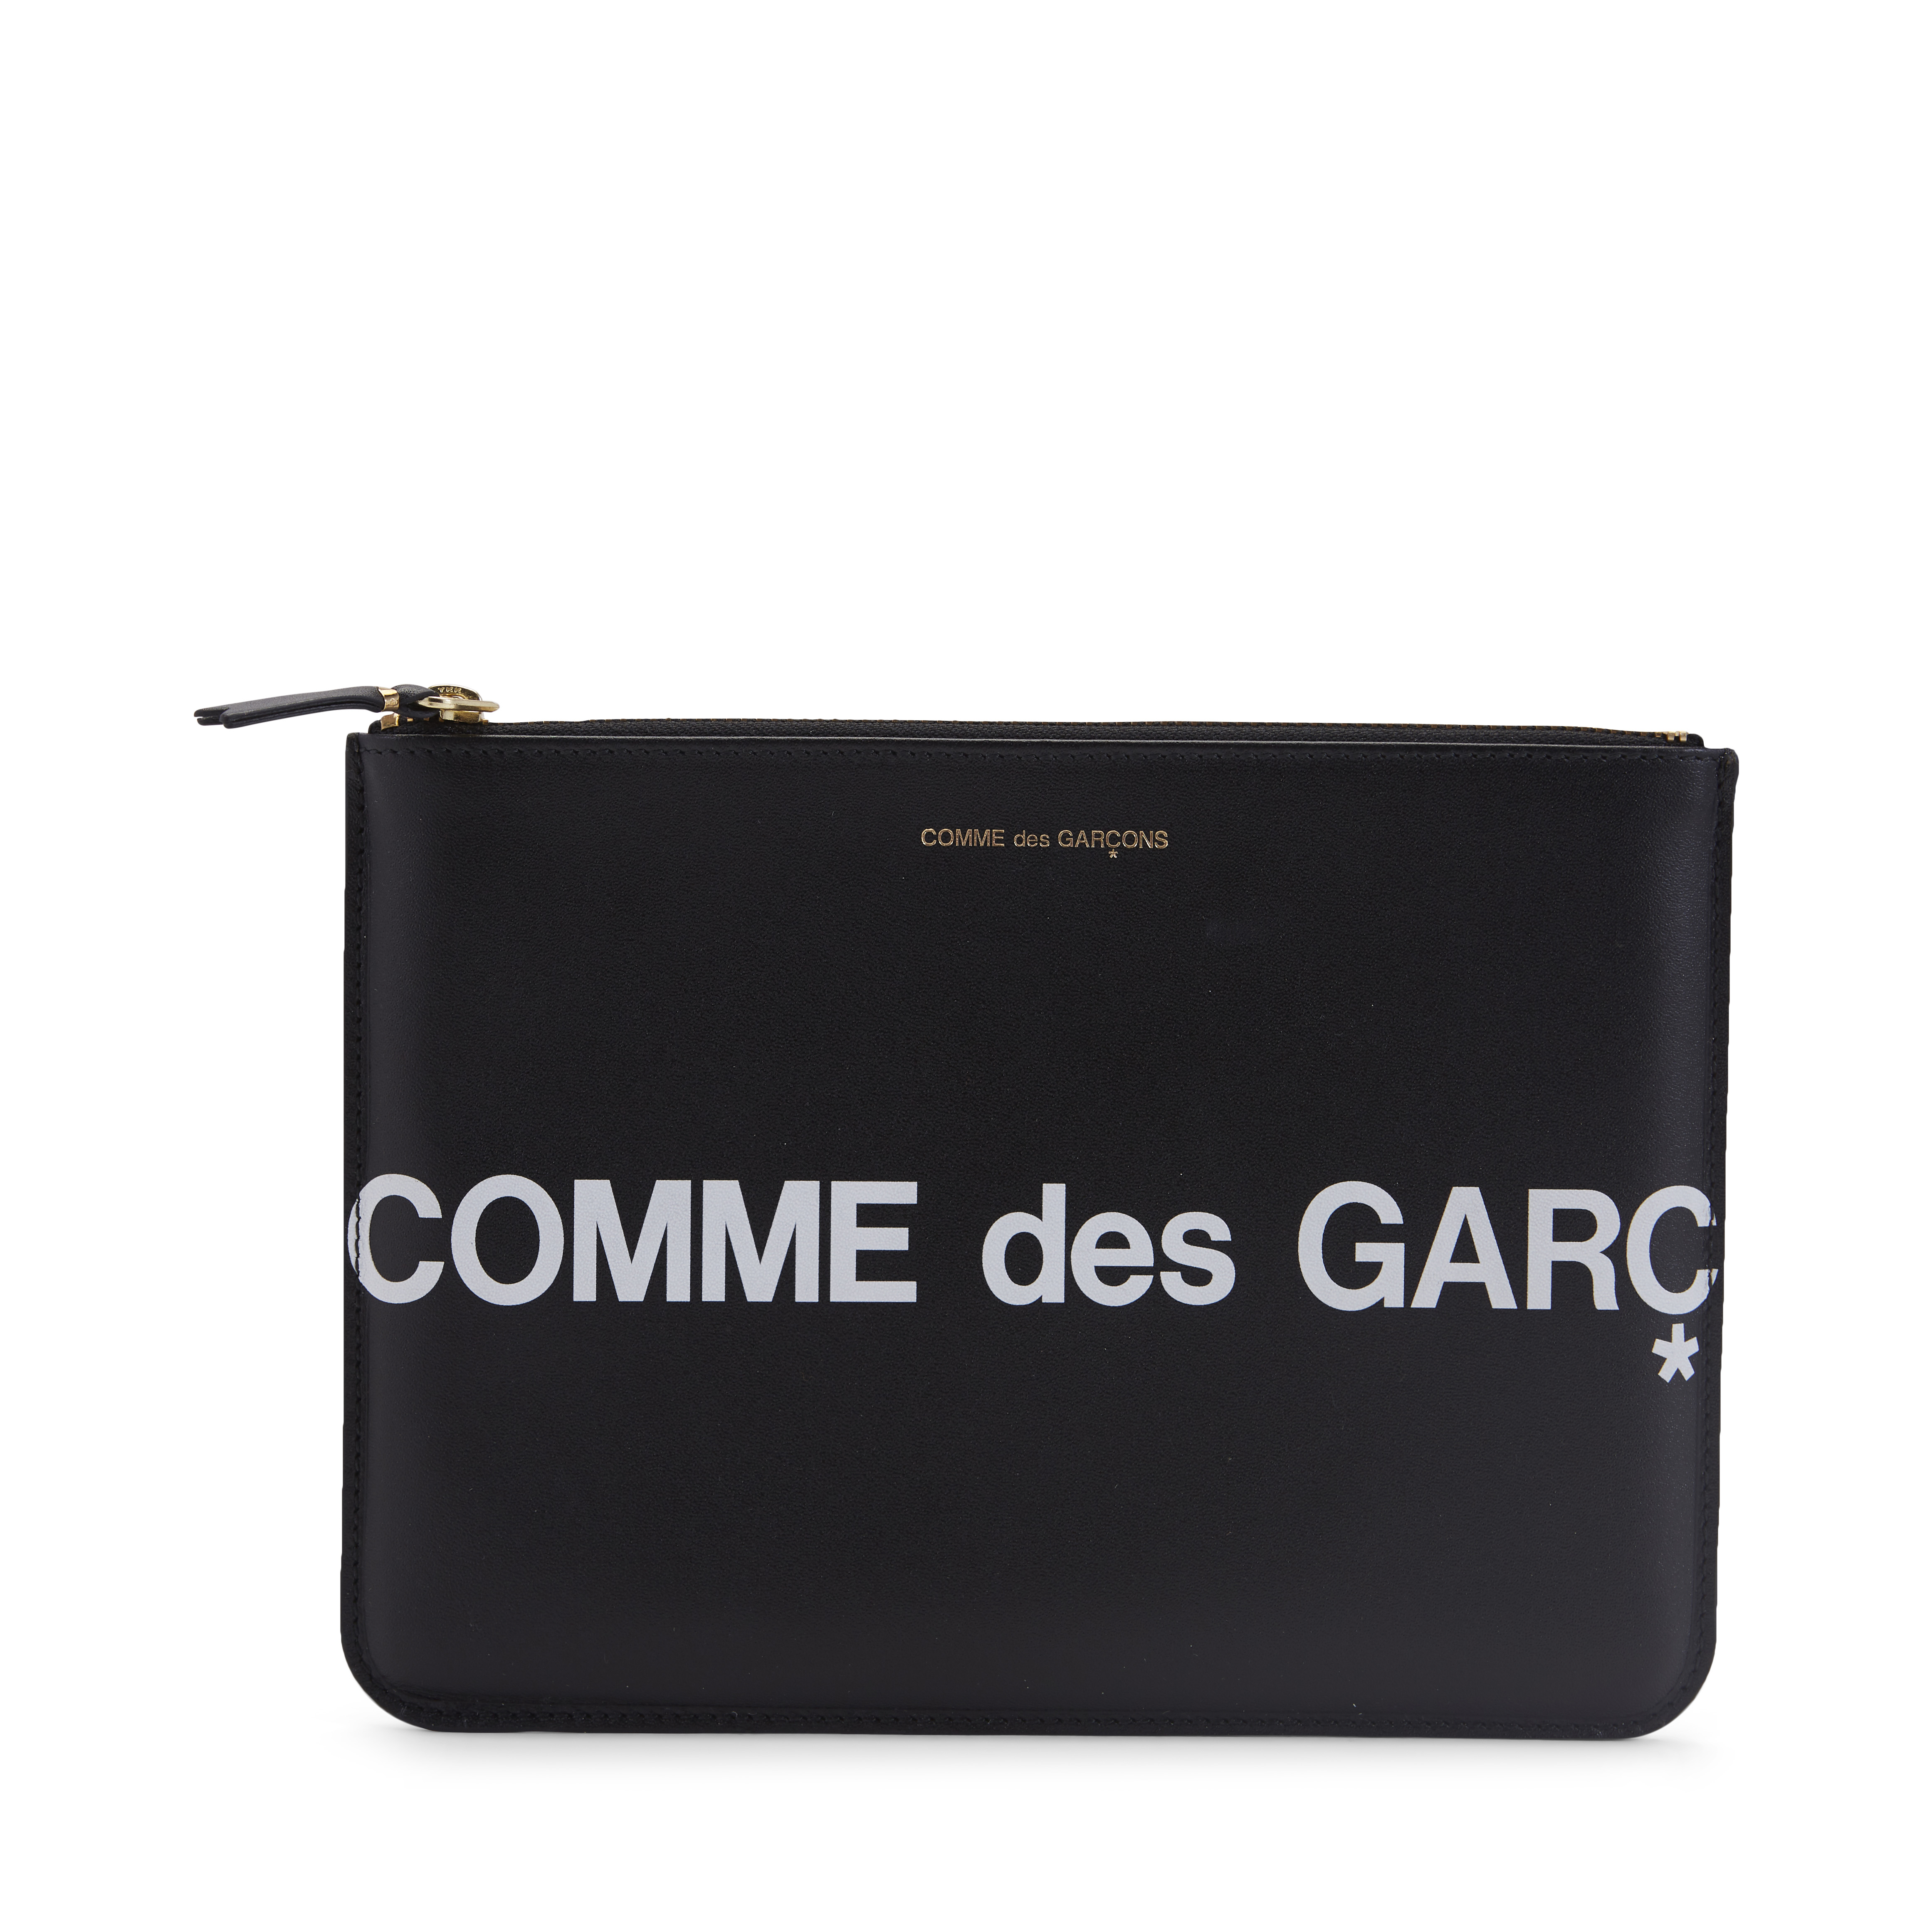 Comme des Garcons SA5100HL Huge Logo Wallet Black in Leather with